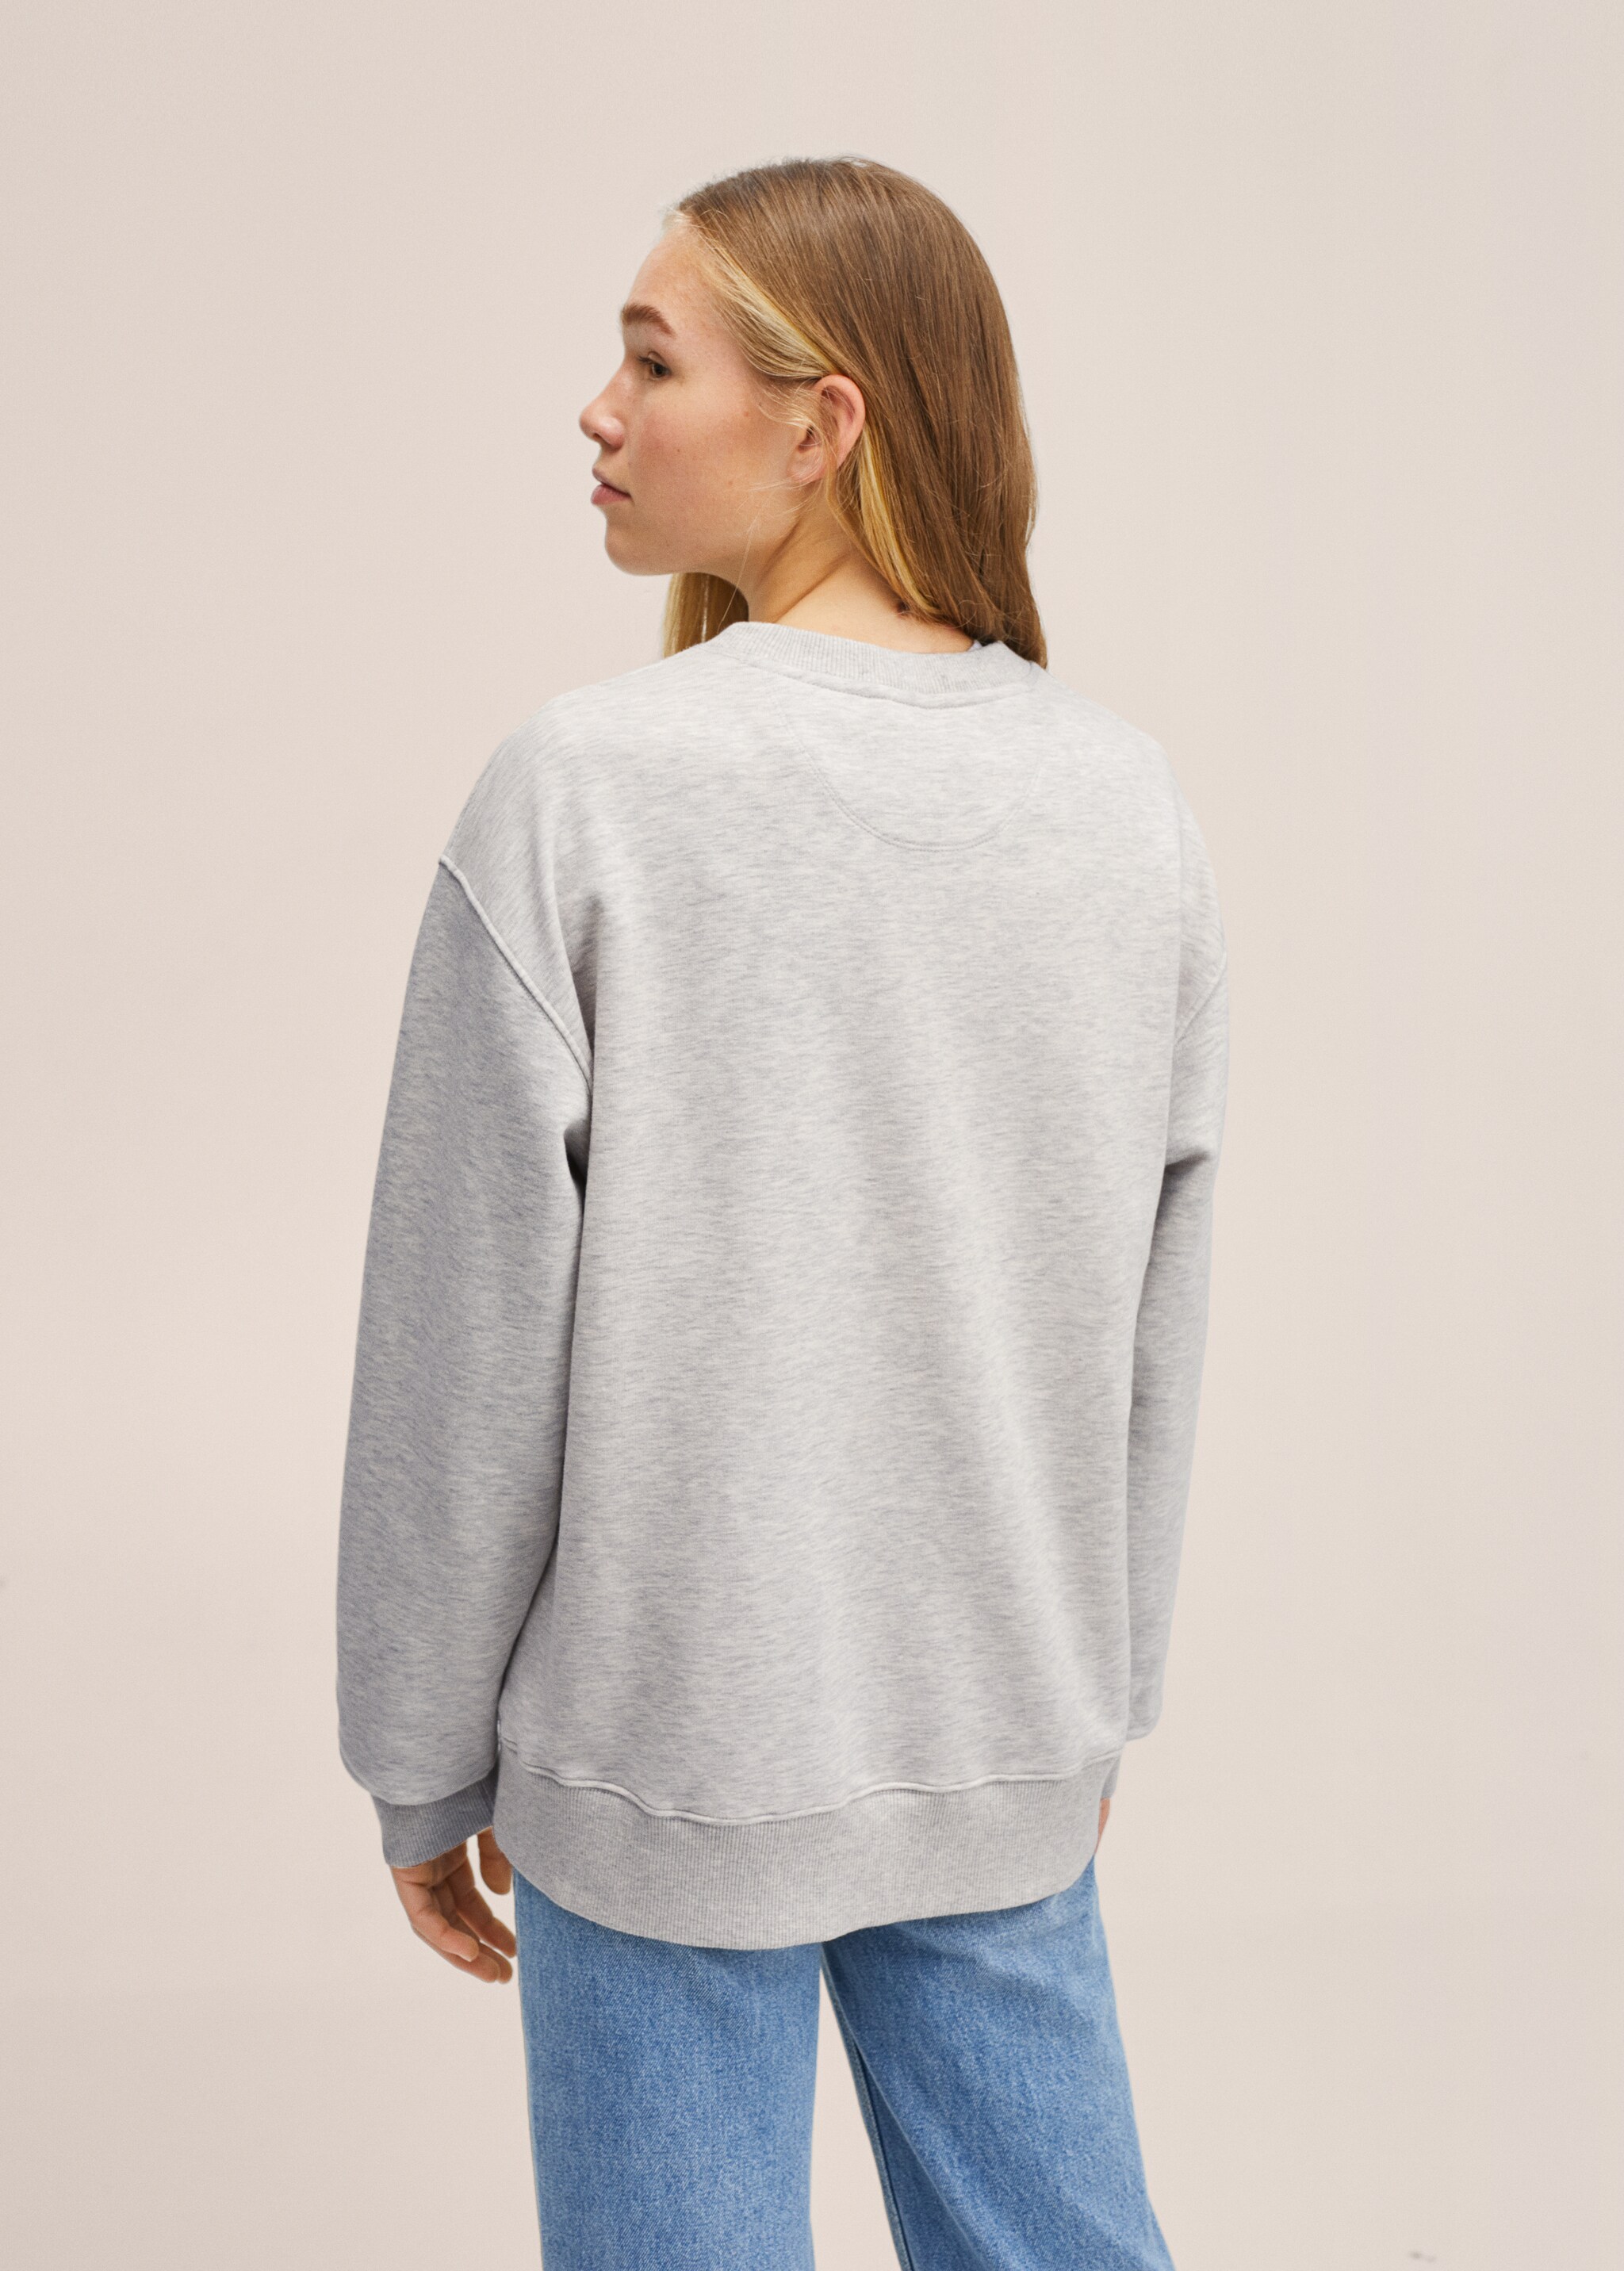 Unisex-Sweatshirt T Kollektion - Rückseite des Artikels